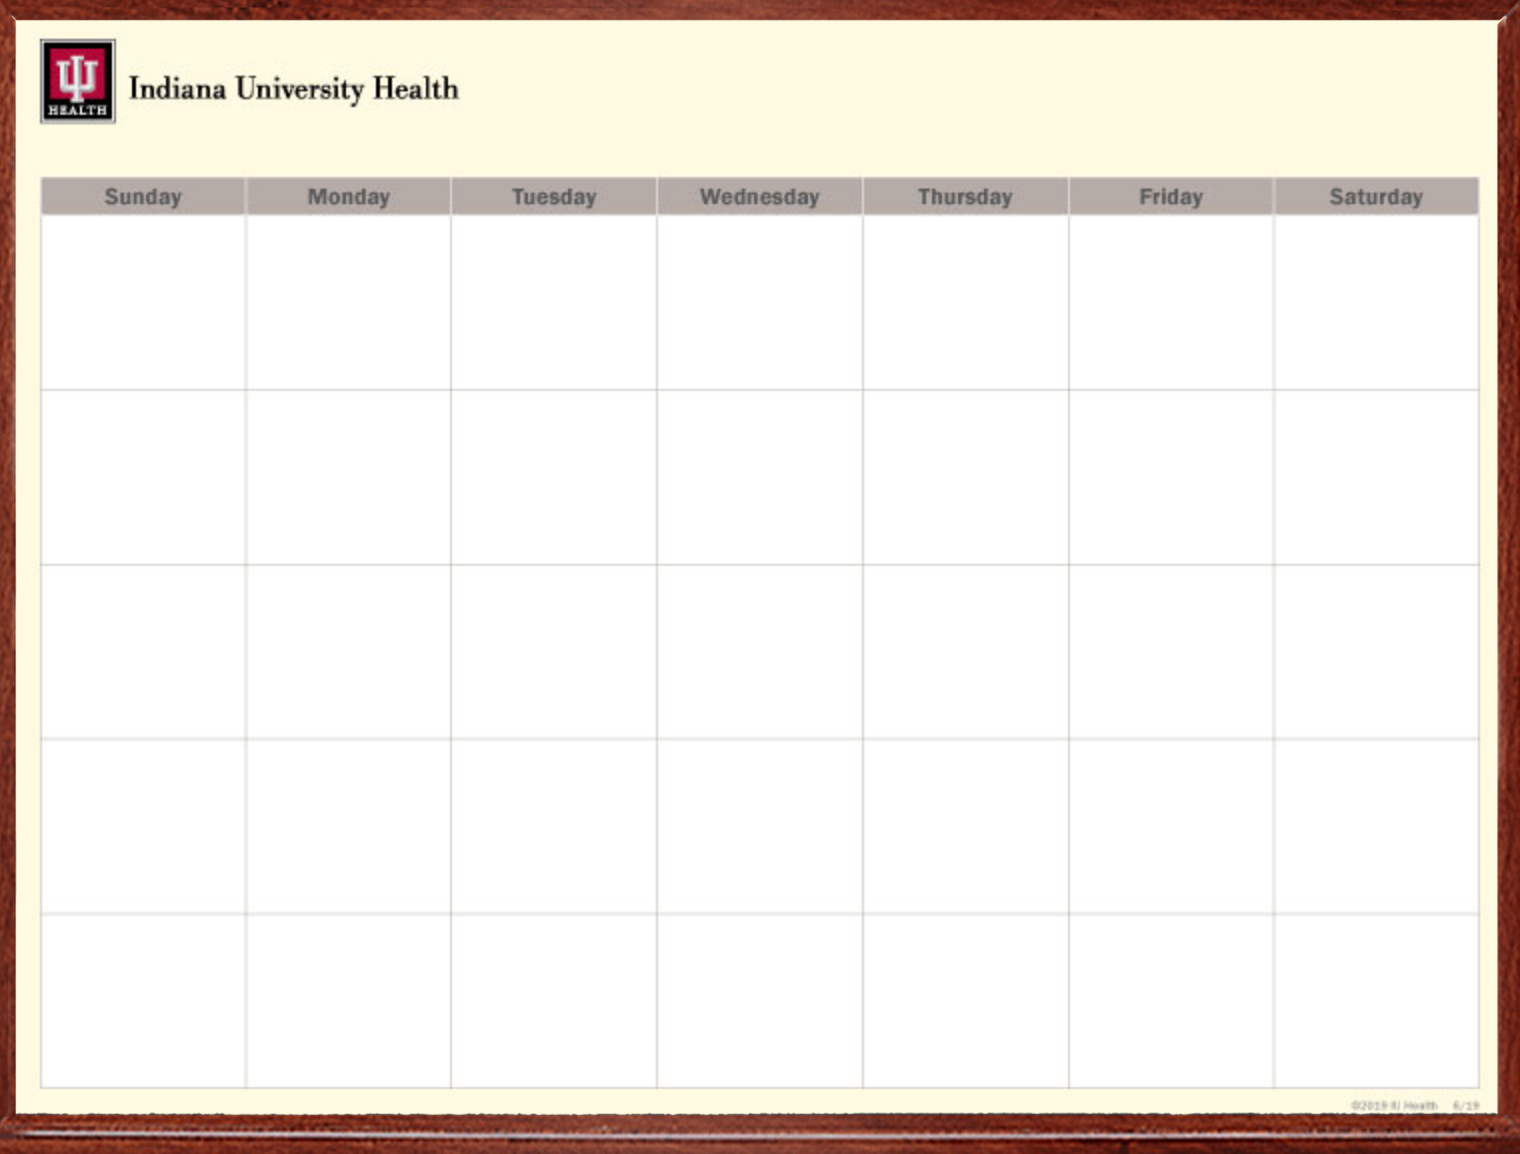 IU Health Communication calendar whiteboard custom printed